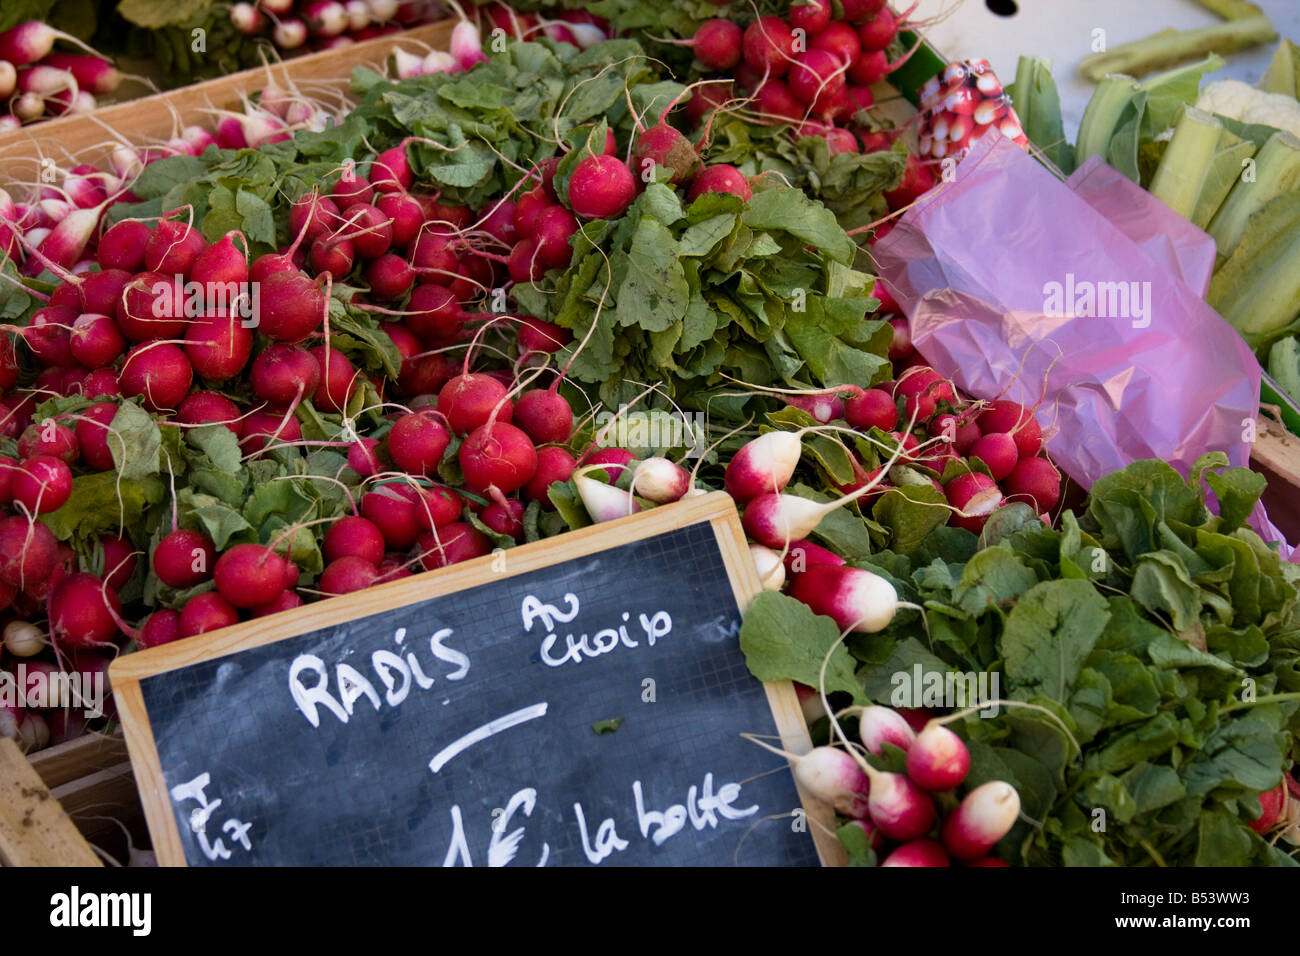 Marché de radis - Gers - Sud de France Banque D'Images